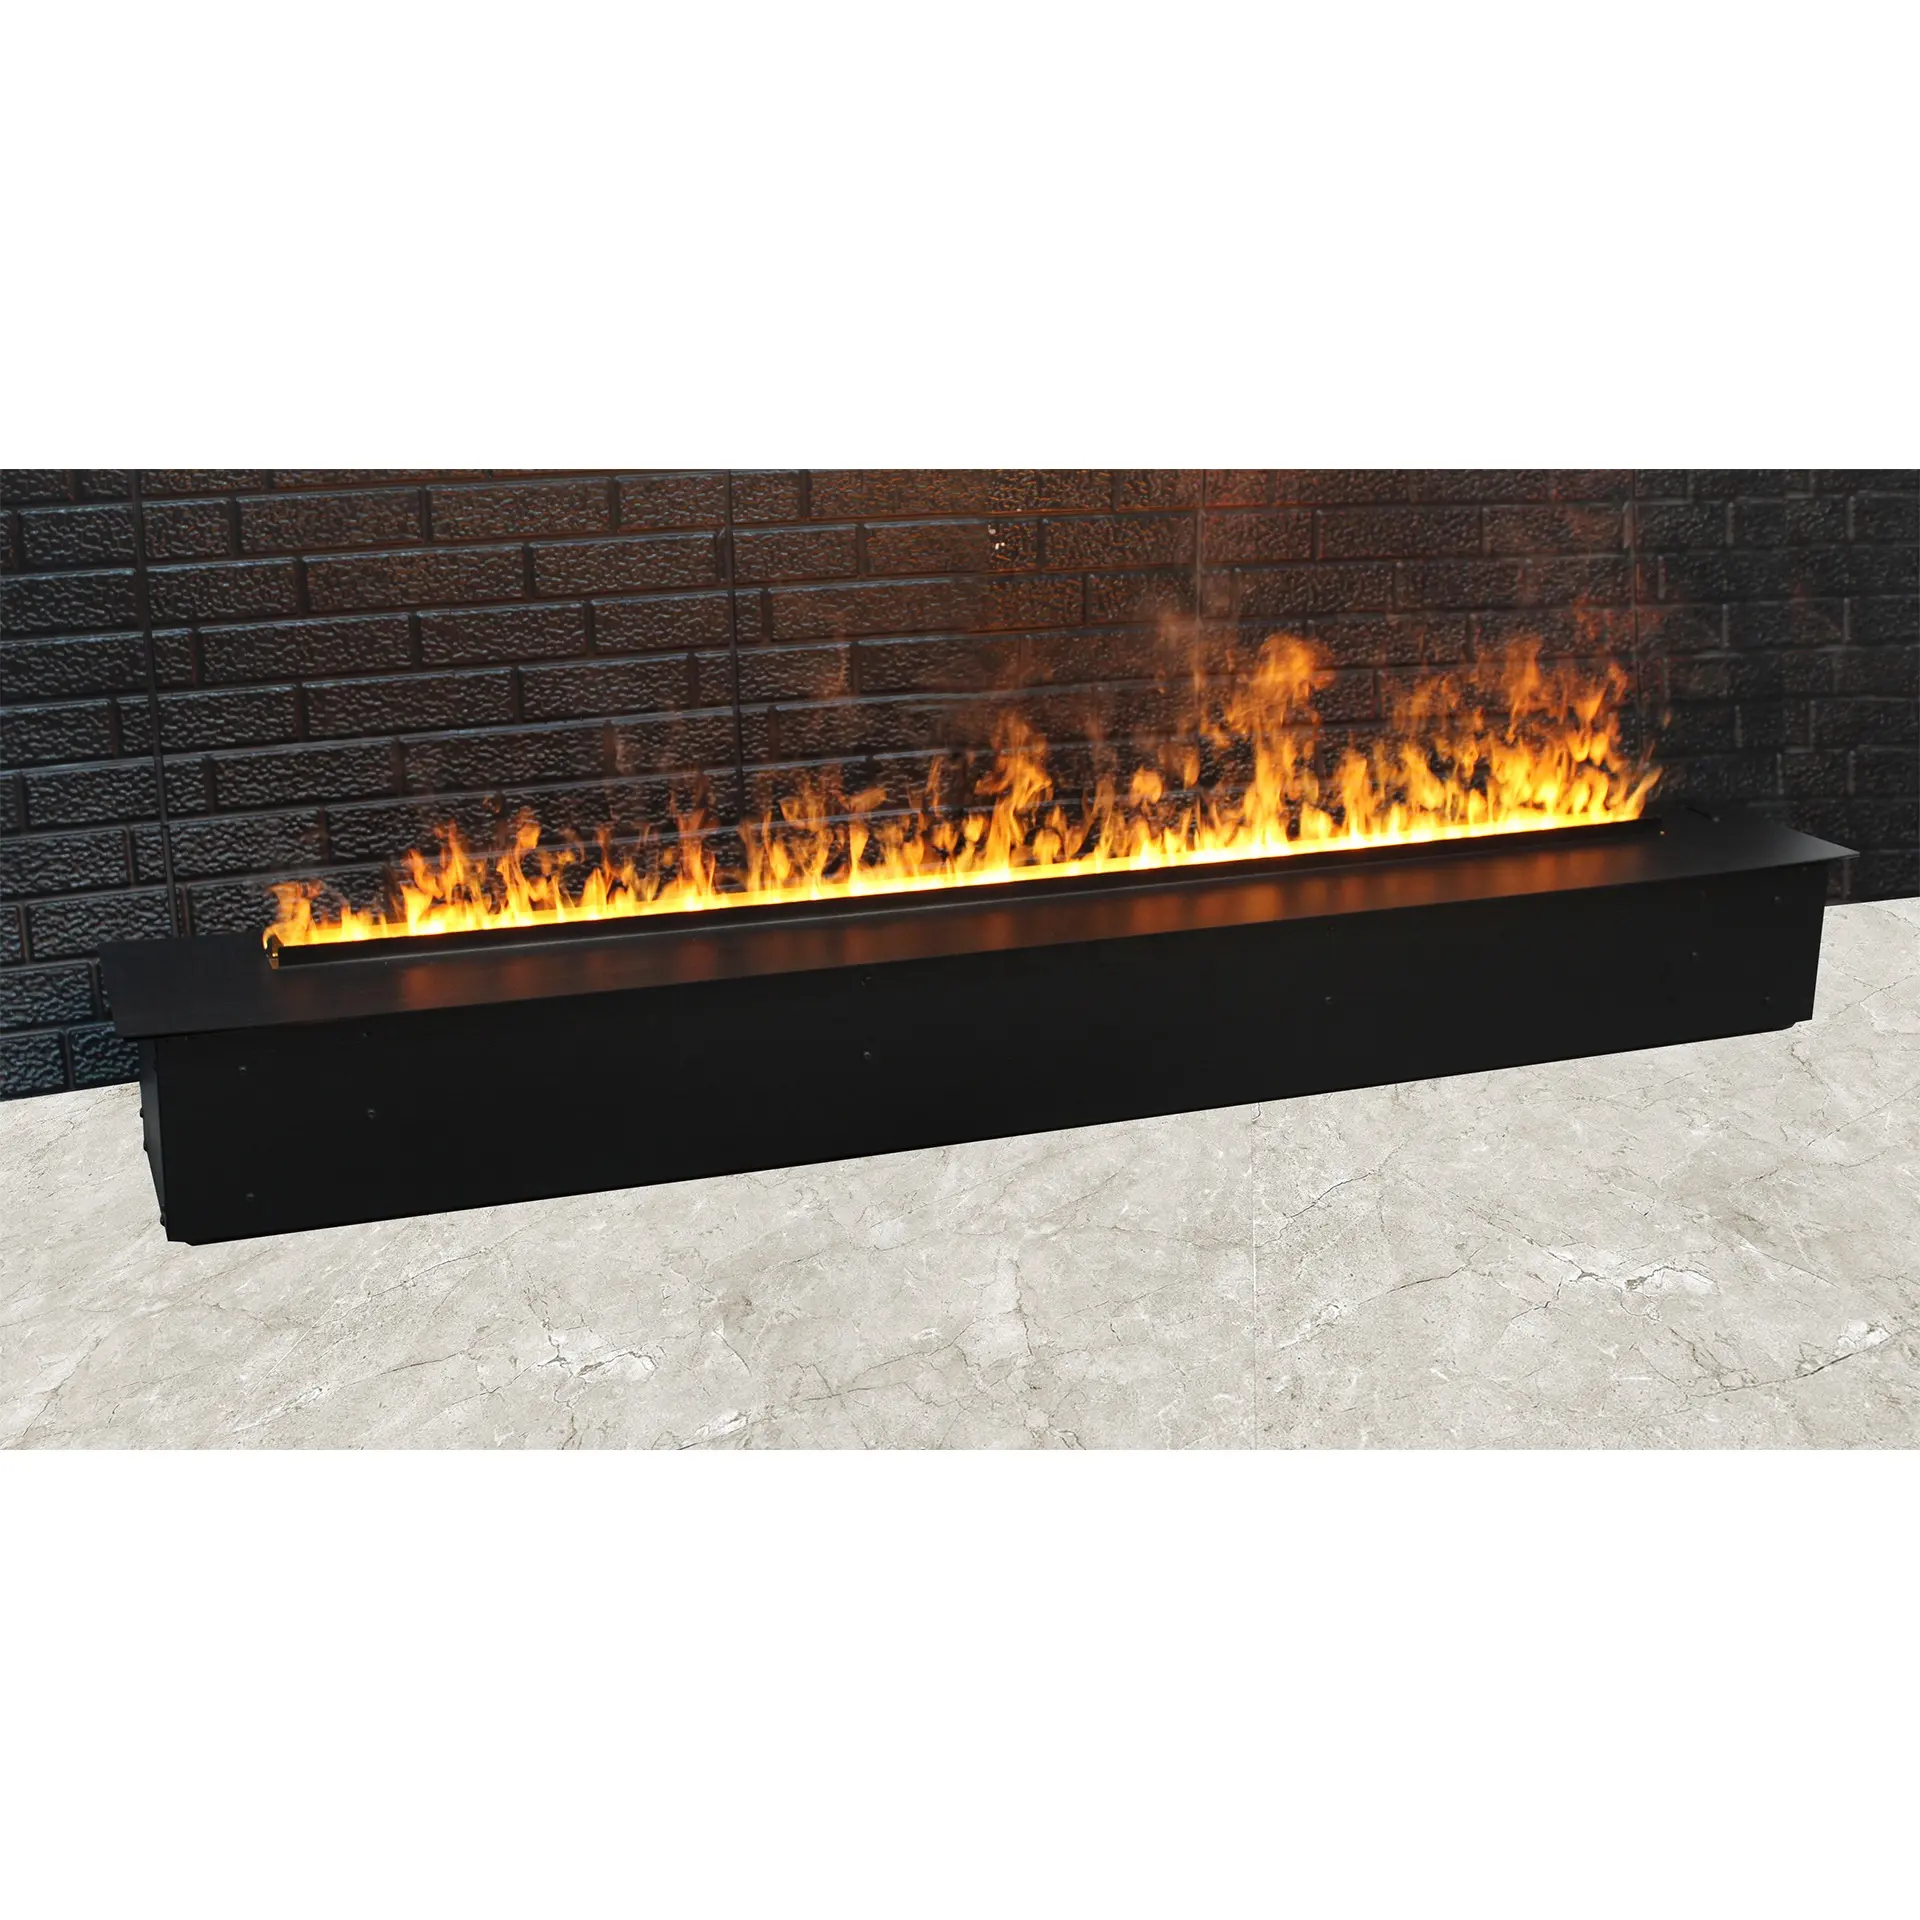 Mist Fire Steam Fireplace Cassette 2000mm Flat Panel Design Ultrasonic Technology Fire from Water